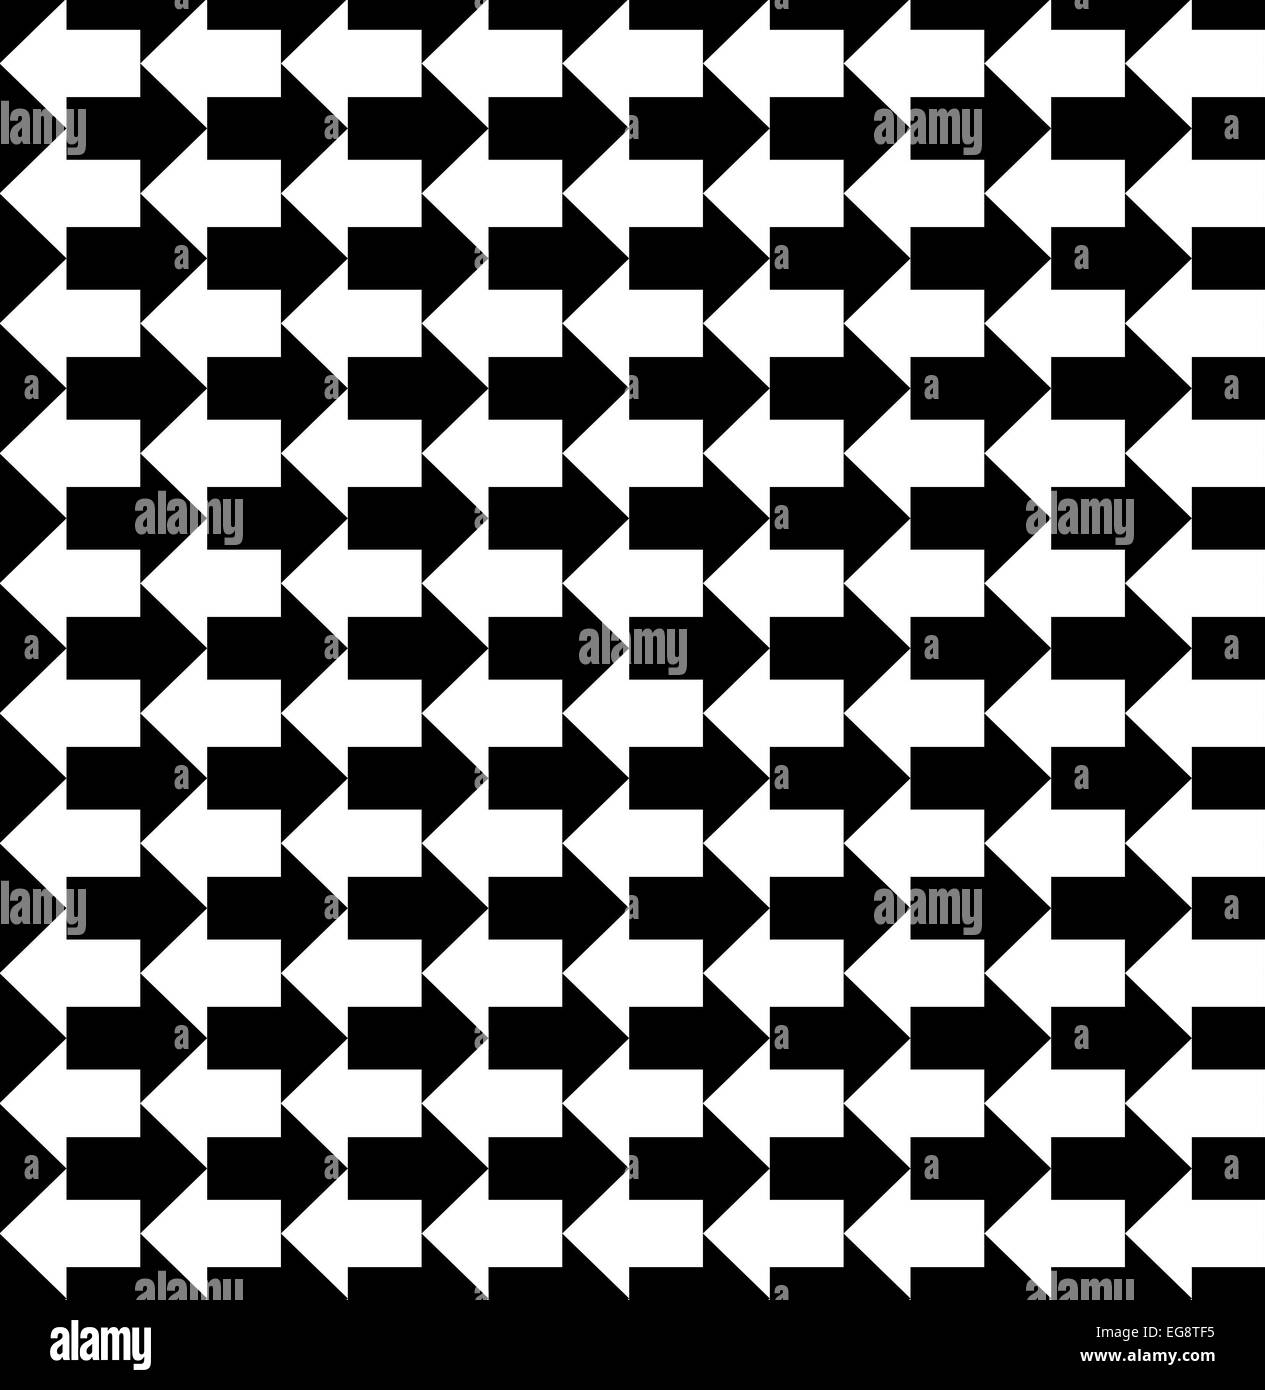 Schwarz / weiß-Pfeile zeigen in entgegengesetzte Richtungen, ein nahtloses Muster Stockfoto